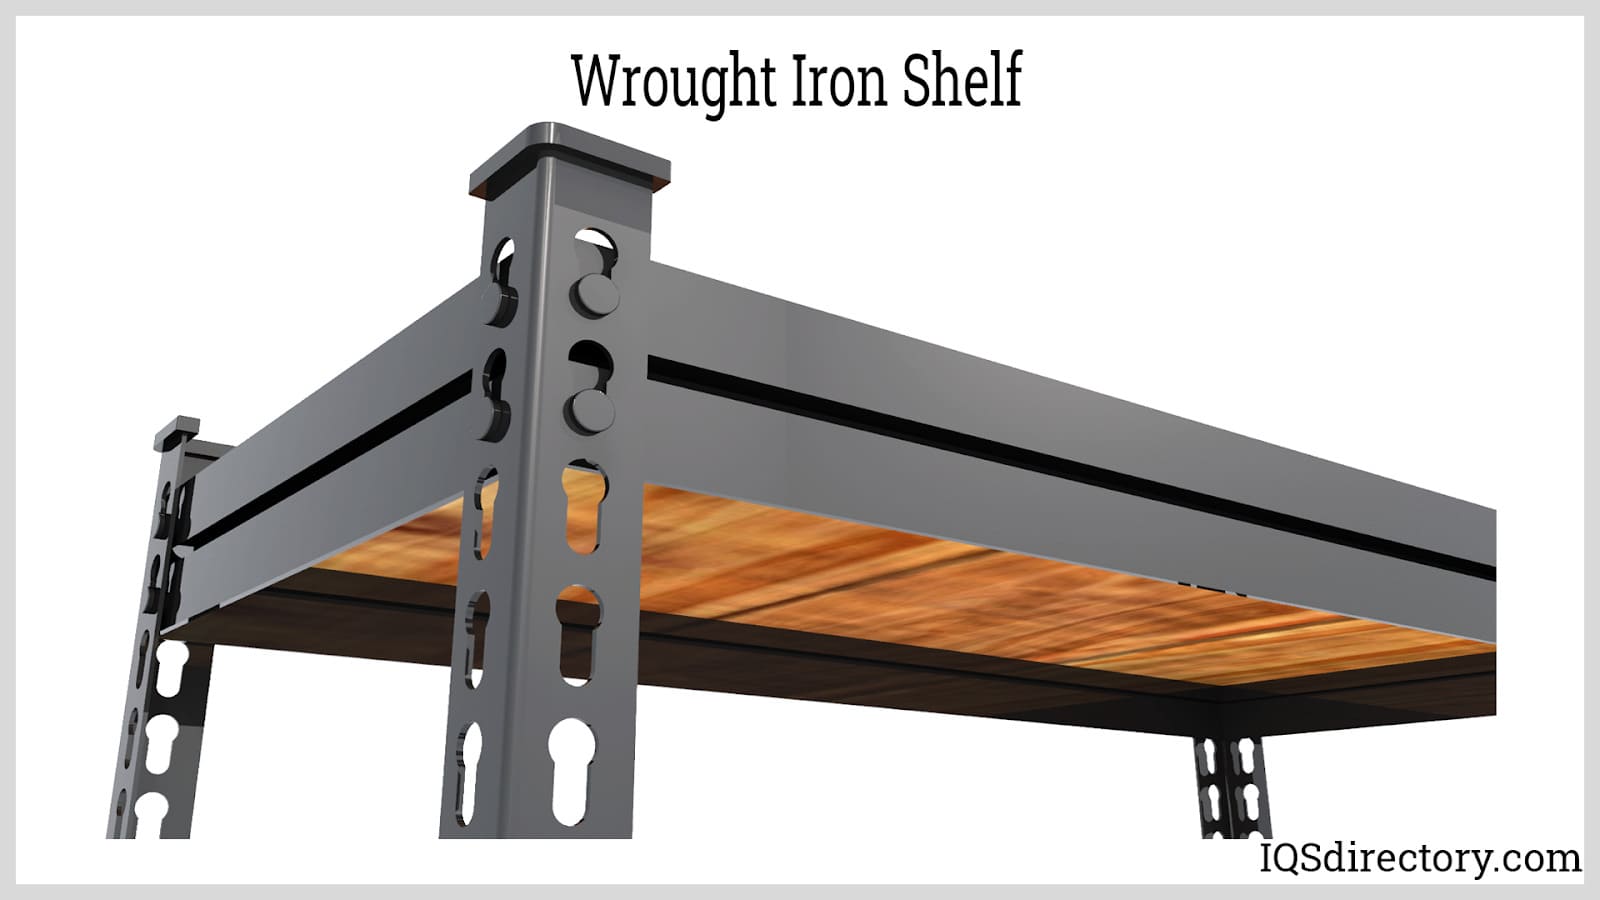 https://www.iqsdirectory.com/articles/steel-shelving/metal-shelving/wrought-iron-shelf.jpg